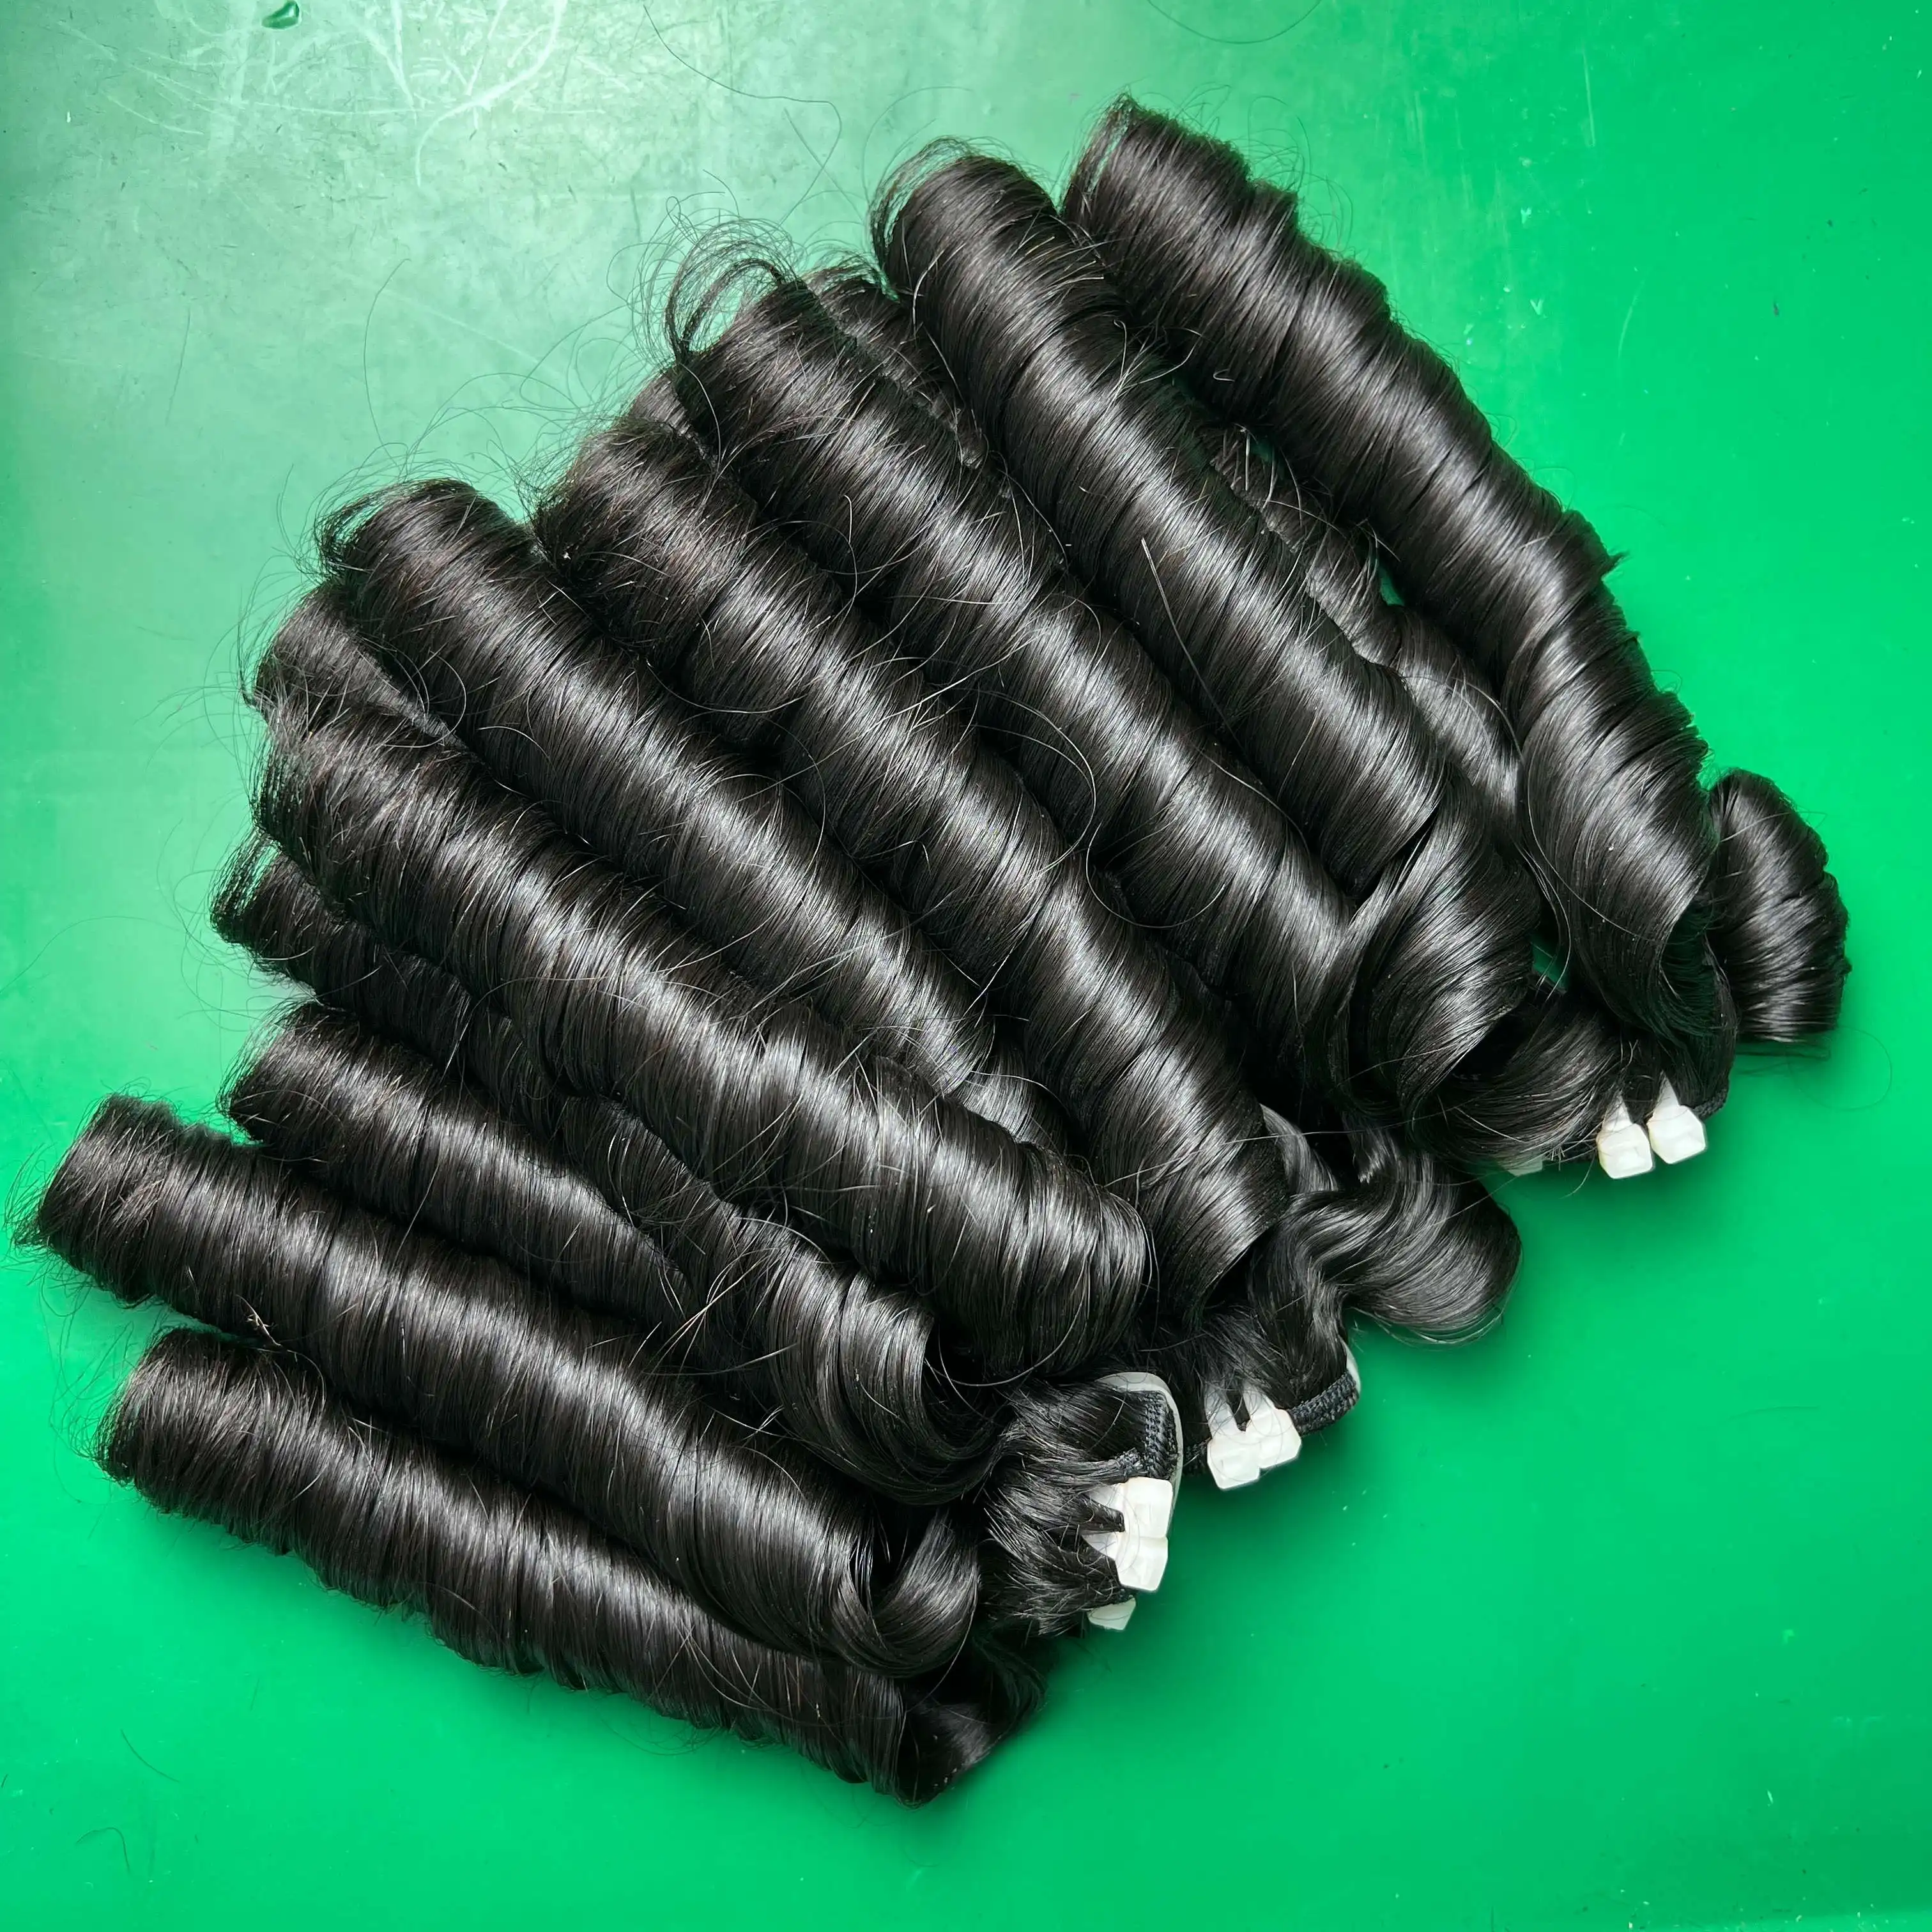 حزم شعر مموج منفصلة فيتنامية مع قائمة أسعار للبيع بالجملة من شركة Cloudy Hair مع نسيج للغلق للشحن السريع للنساء النيجيريات